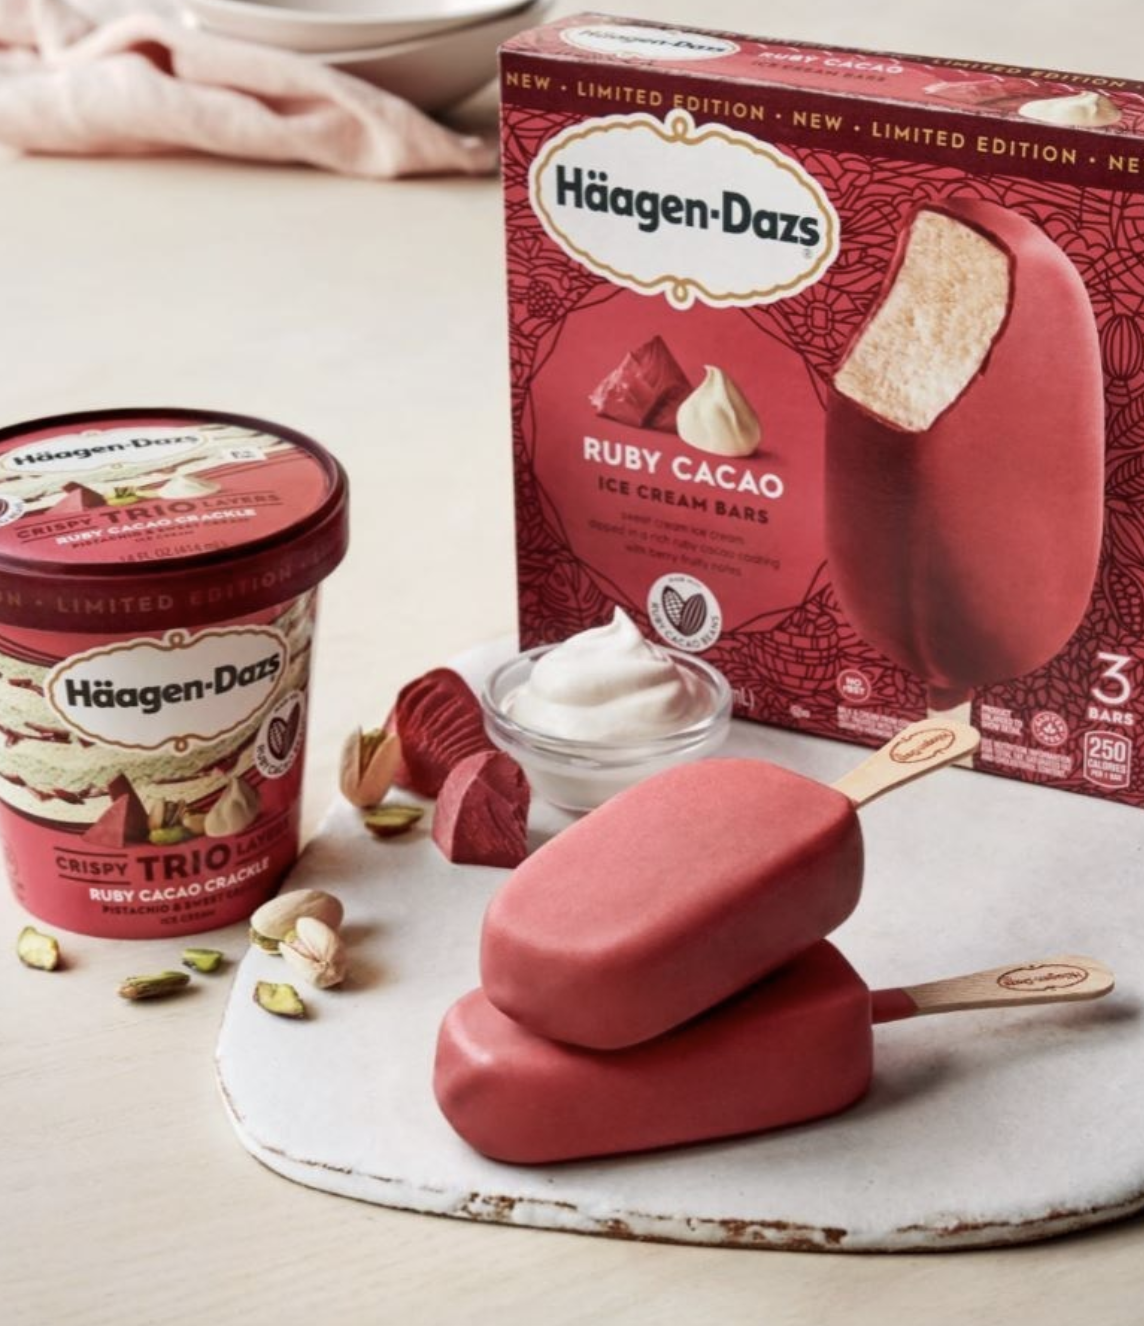 Häagen-Dazs Introduces New Ruby Cacao Ice Creams